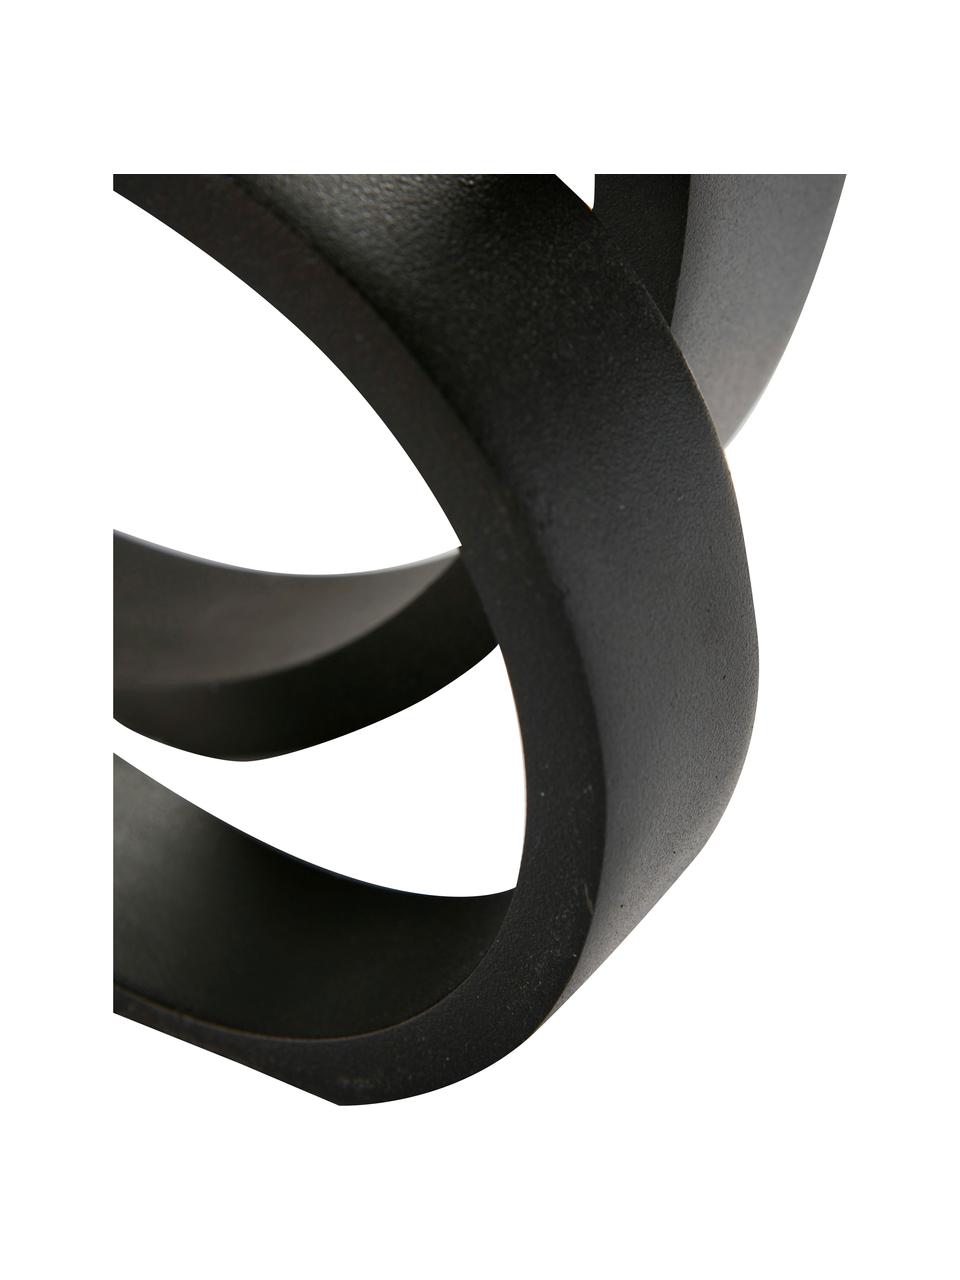 Oggetto decorativo Ring, Alluminio rivestito, Nero, Larg. 14 x Alt. 14 cm